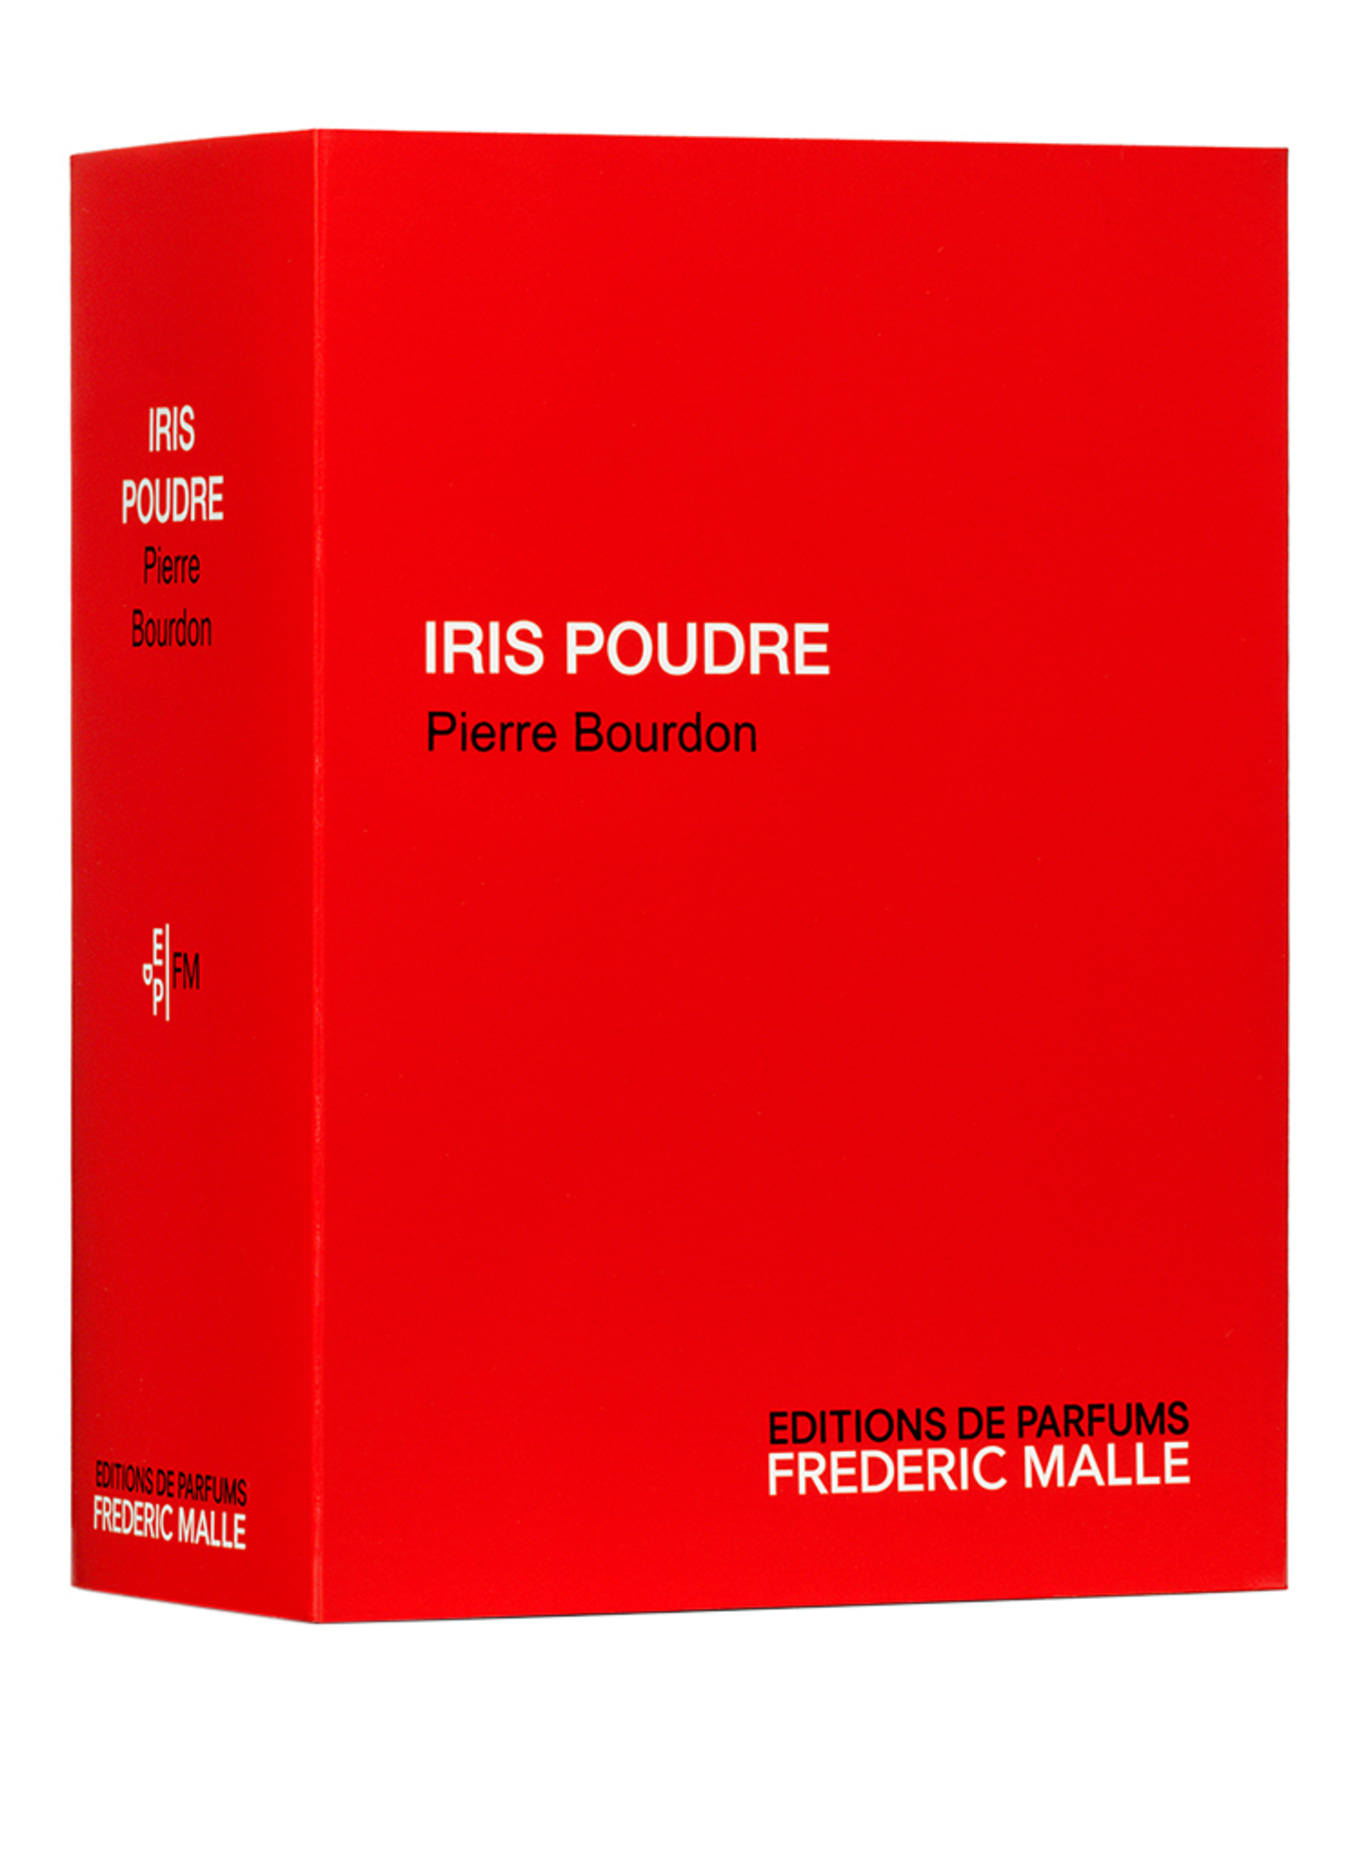 EDITIONS DE PARFUMS FREDERIC MALLE IRIS POUDRE (Obrázek 2)